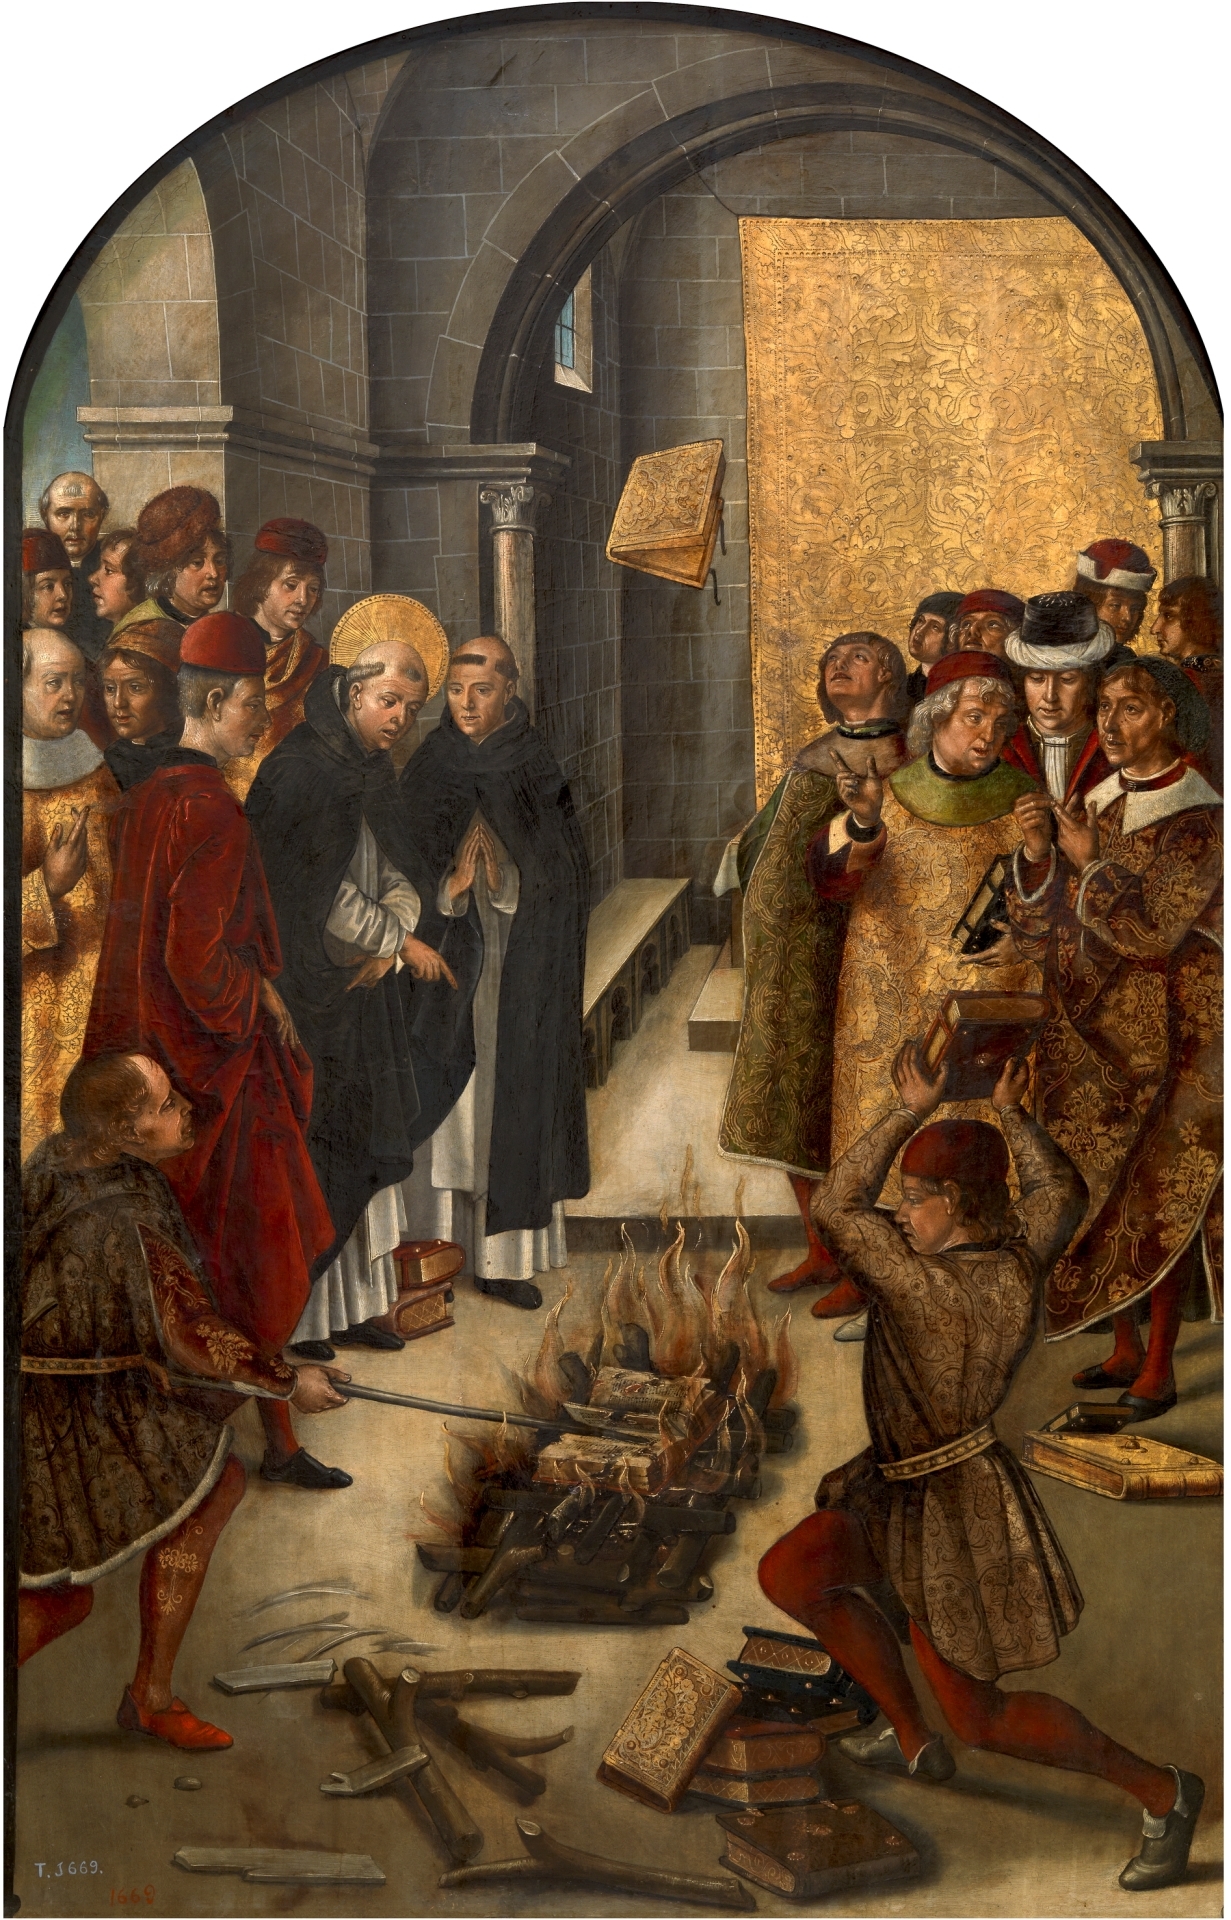 Pedro Berruguete 15. század végi festményén Szent Domonkos előtt teszik próbára a kathar és katolikus tanokat. Mindkét fél könyveit tűzre vetik, és ki hitte volna, a katolikusok könyvei maradnak épségben. Ez a legenda hivatott igazolni, hogy a katharok mindenben tévedtek.